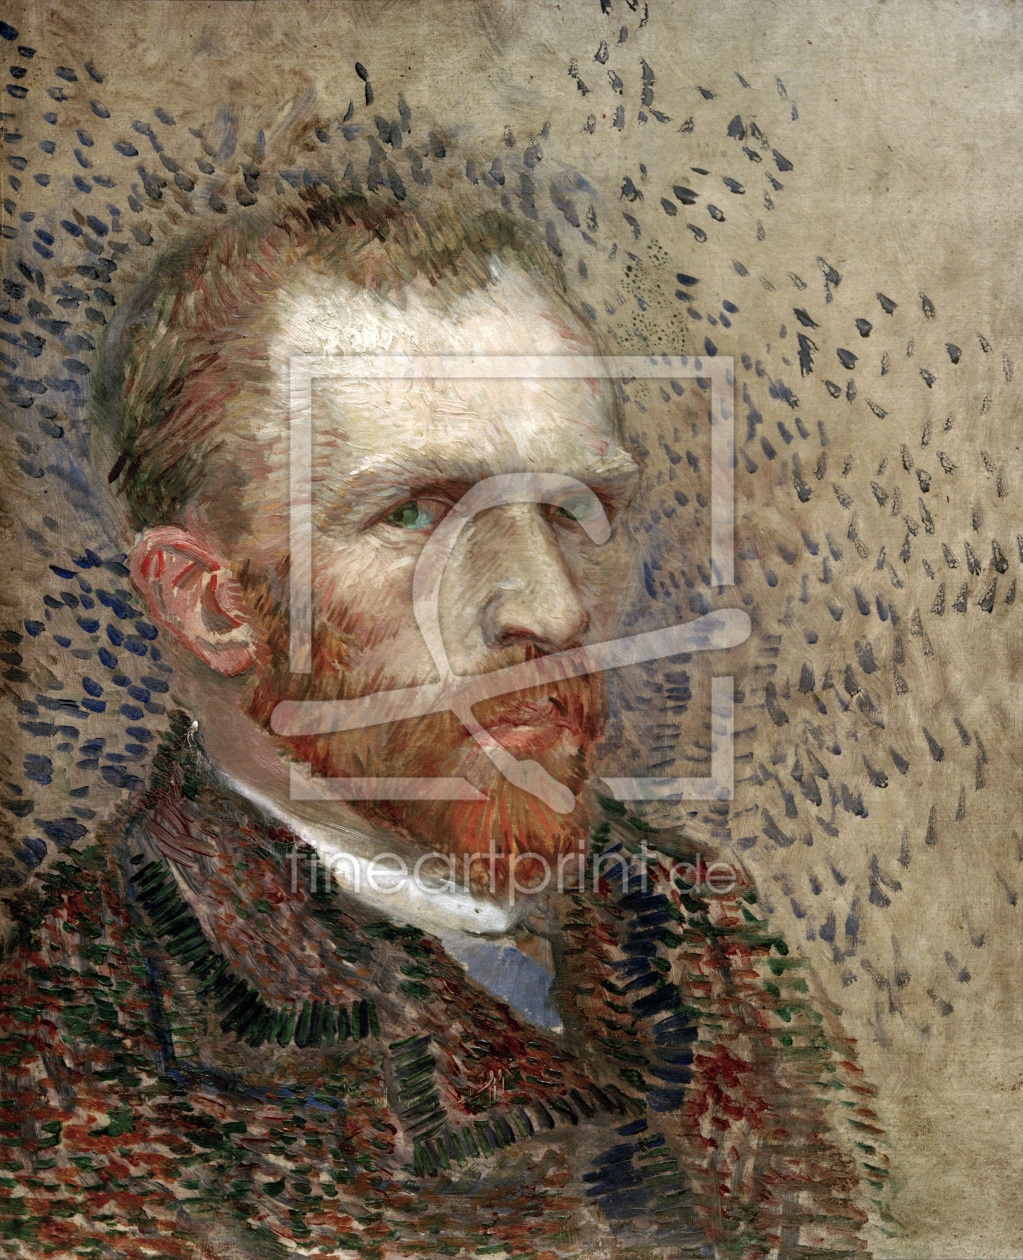 Bild-Nr.: 30003066 van Gogh, Self-Portrait /Paint./ 1887 erstellt von van Gogh, Vincent